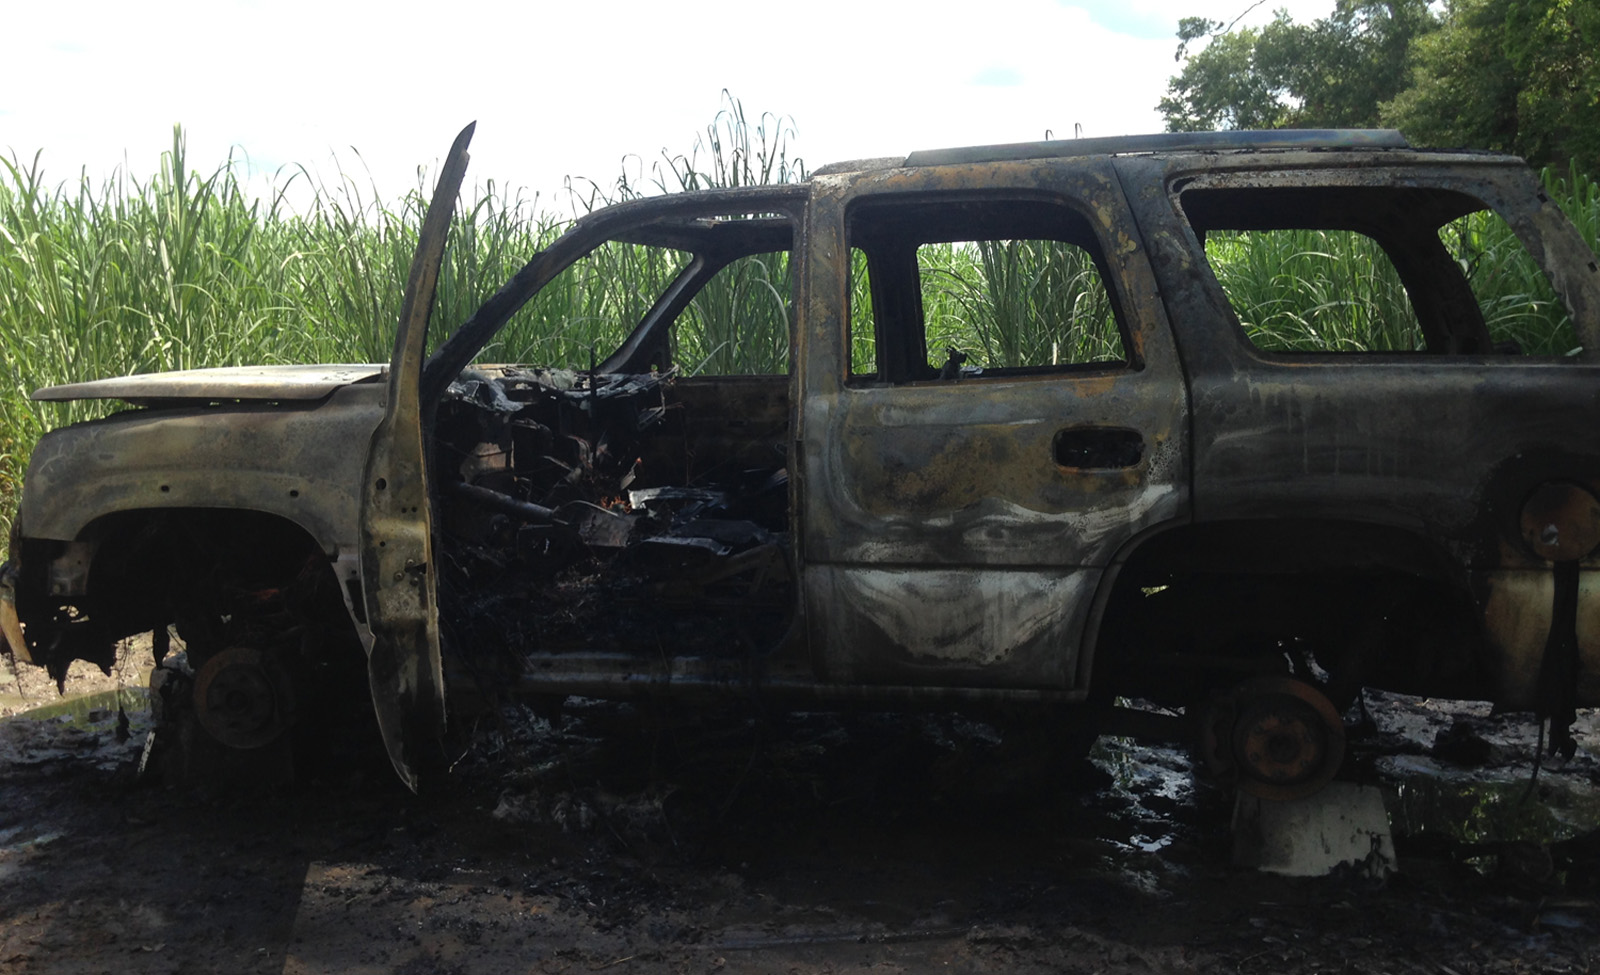 Burned SUV found in Thibodaux